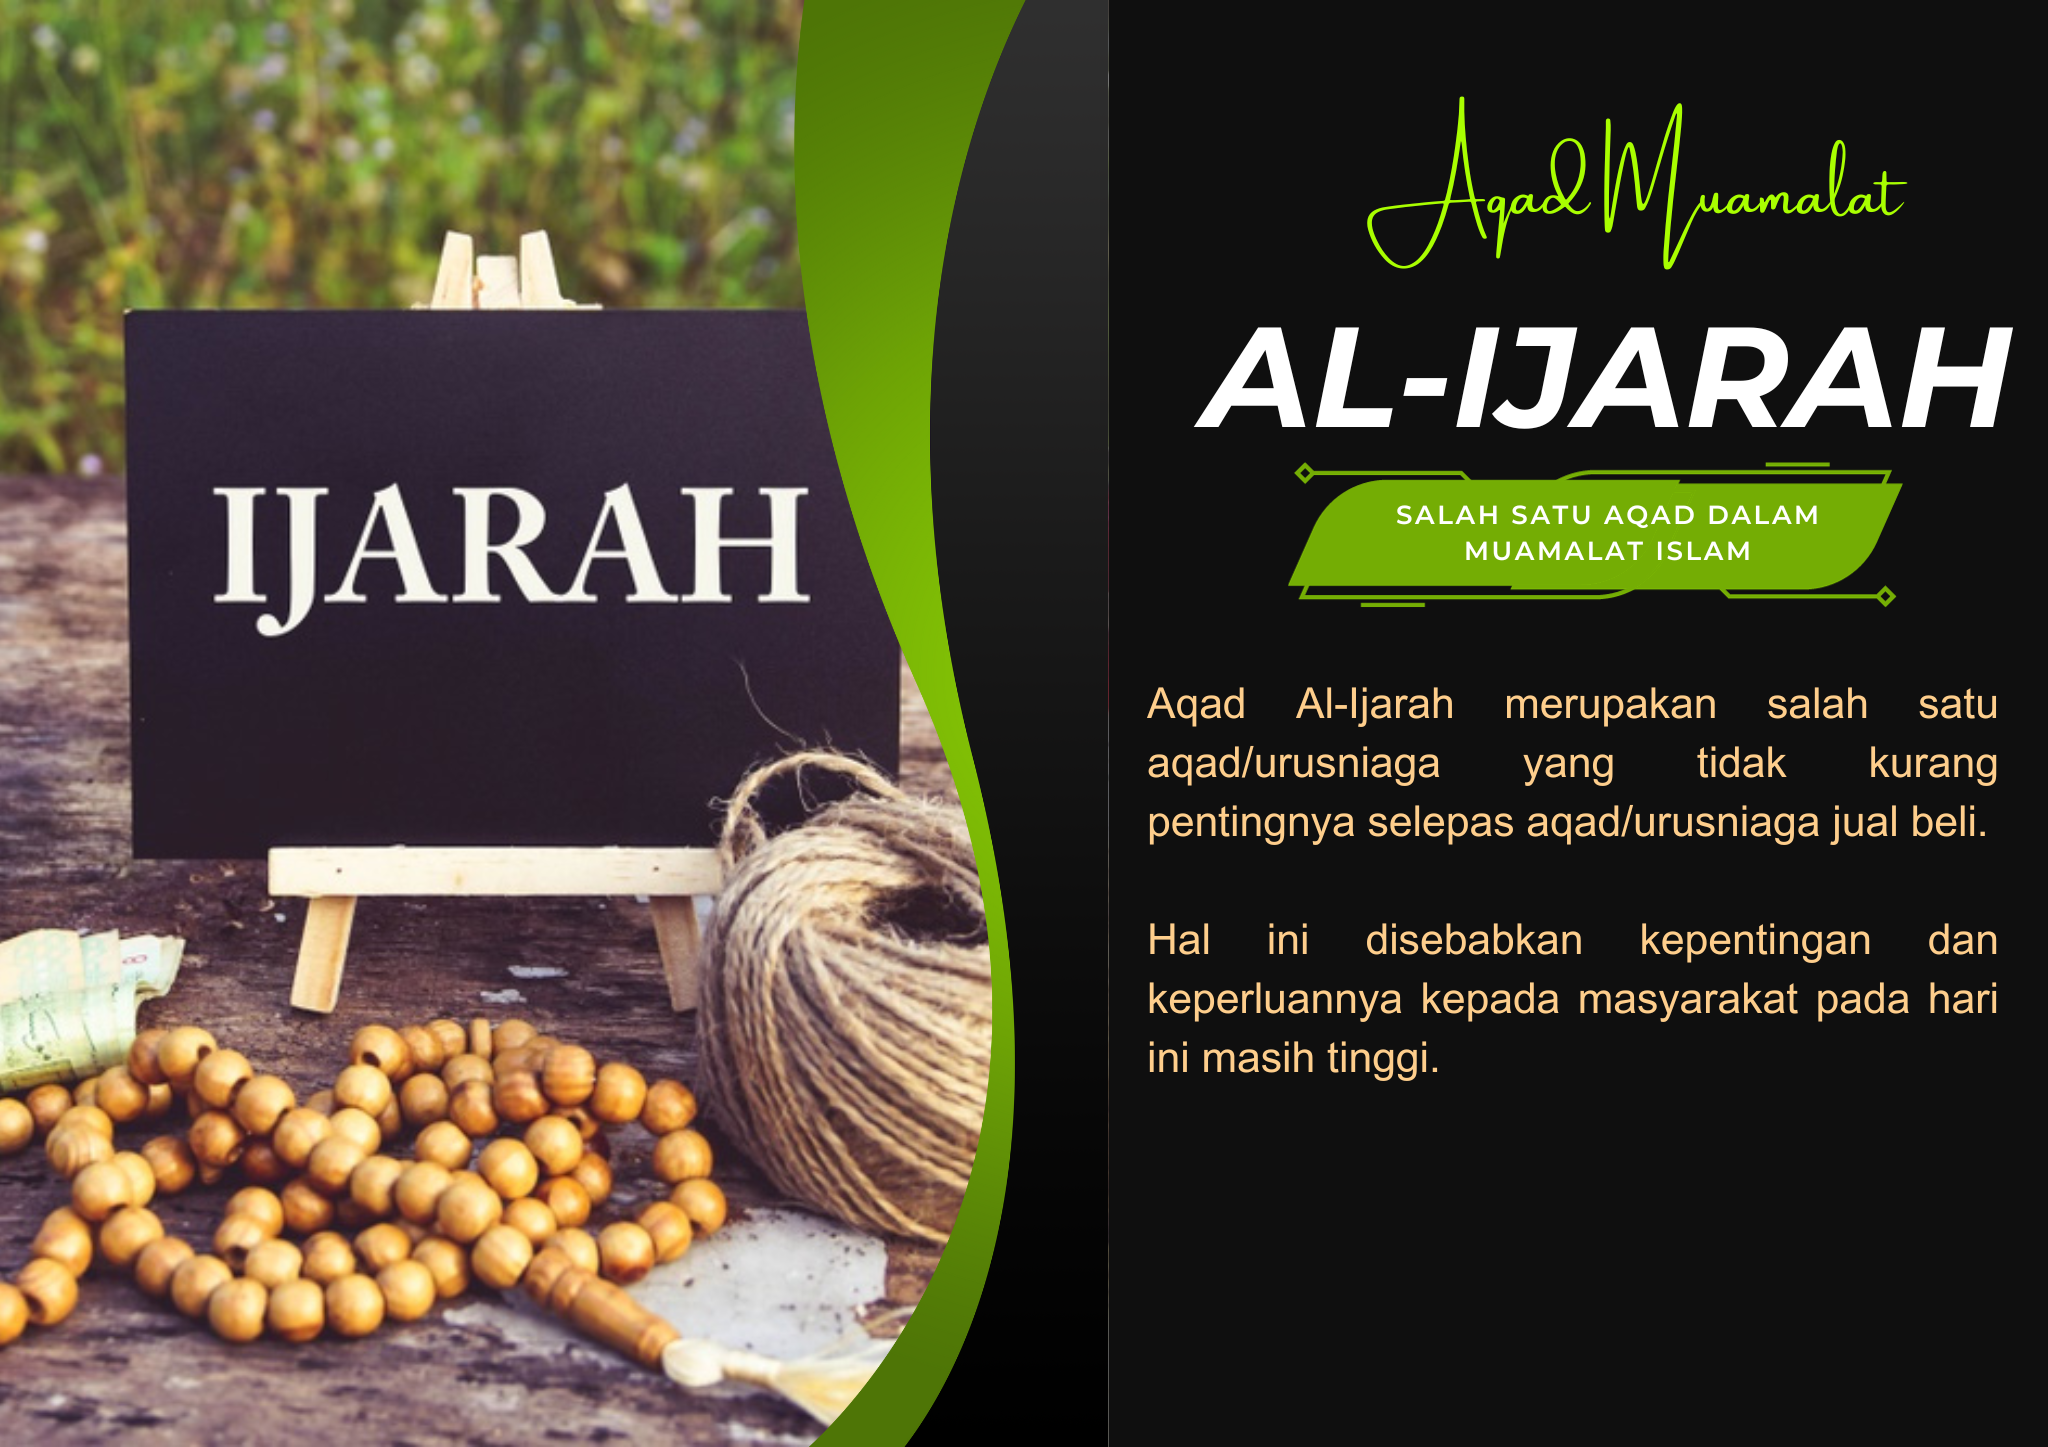 AL-IJARAH